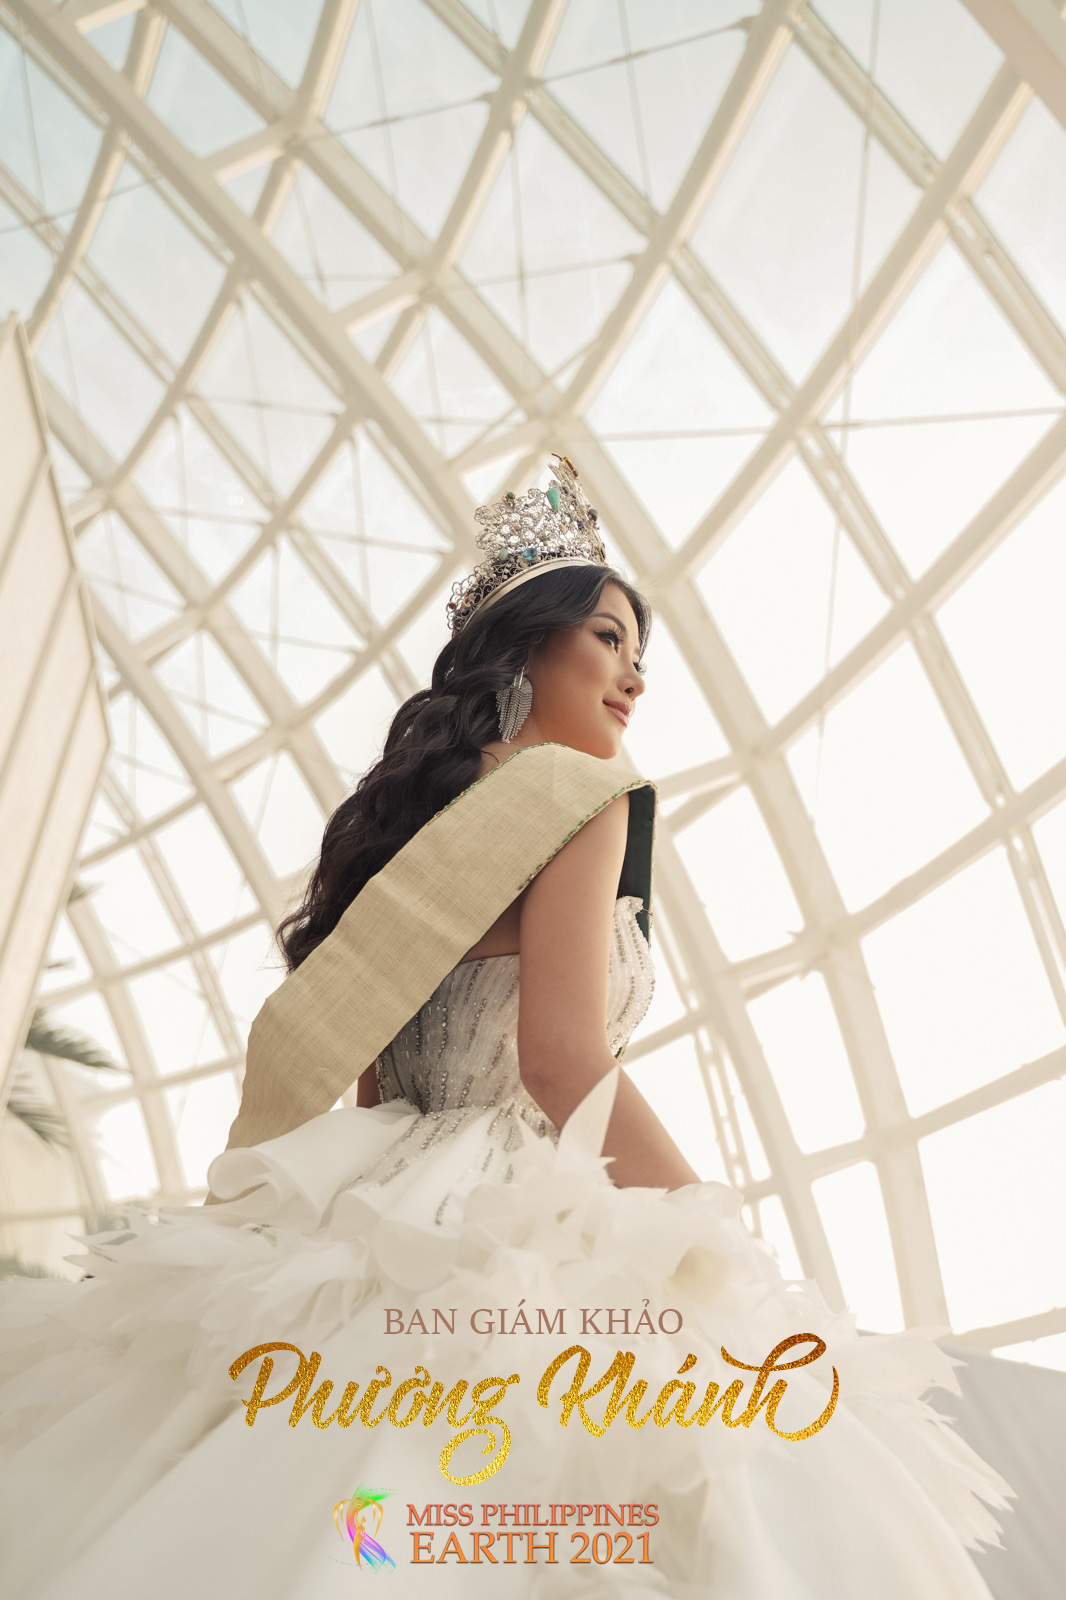 Hoa hậu Phương Khánh làm giám khảo Hoa hậu Trái đất Philippines 2021 - ảnh 1